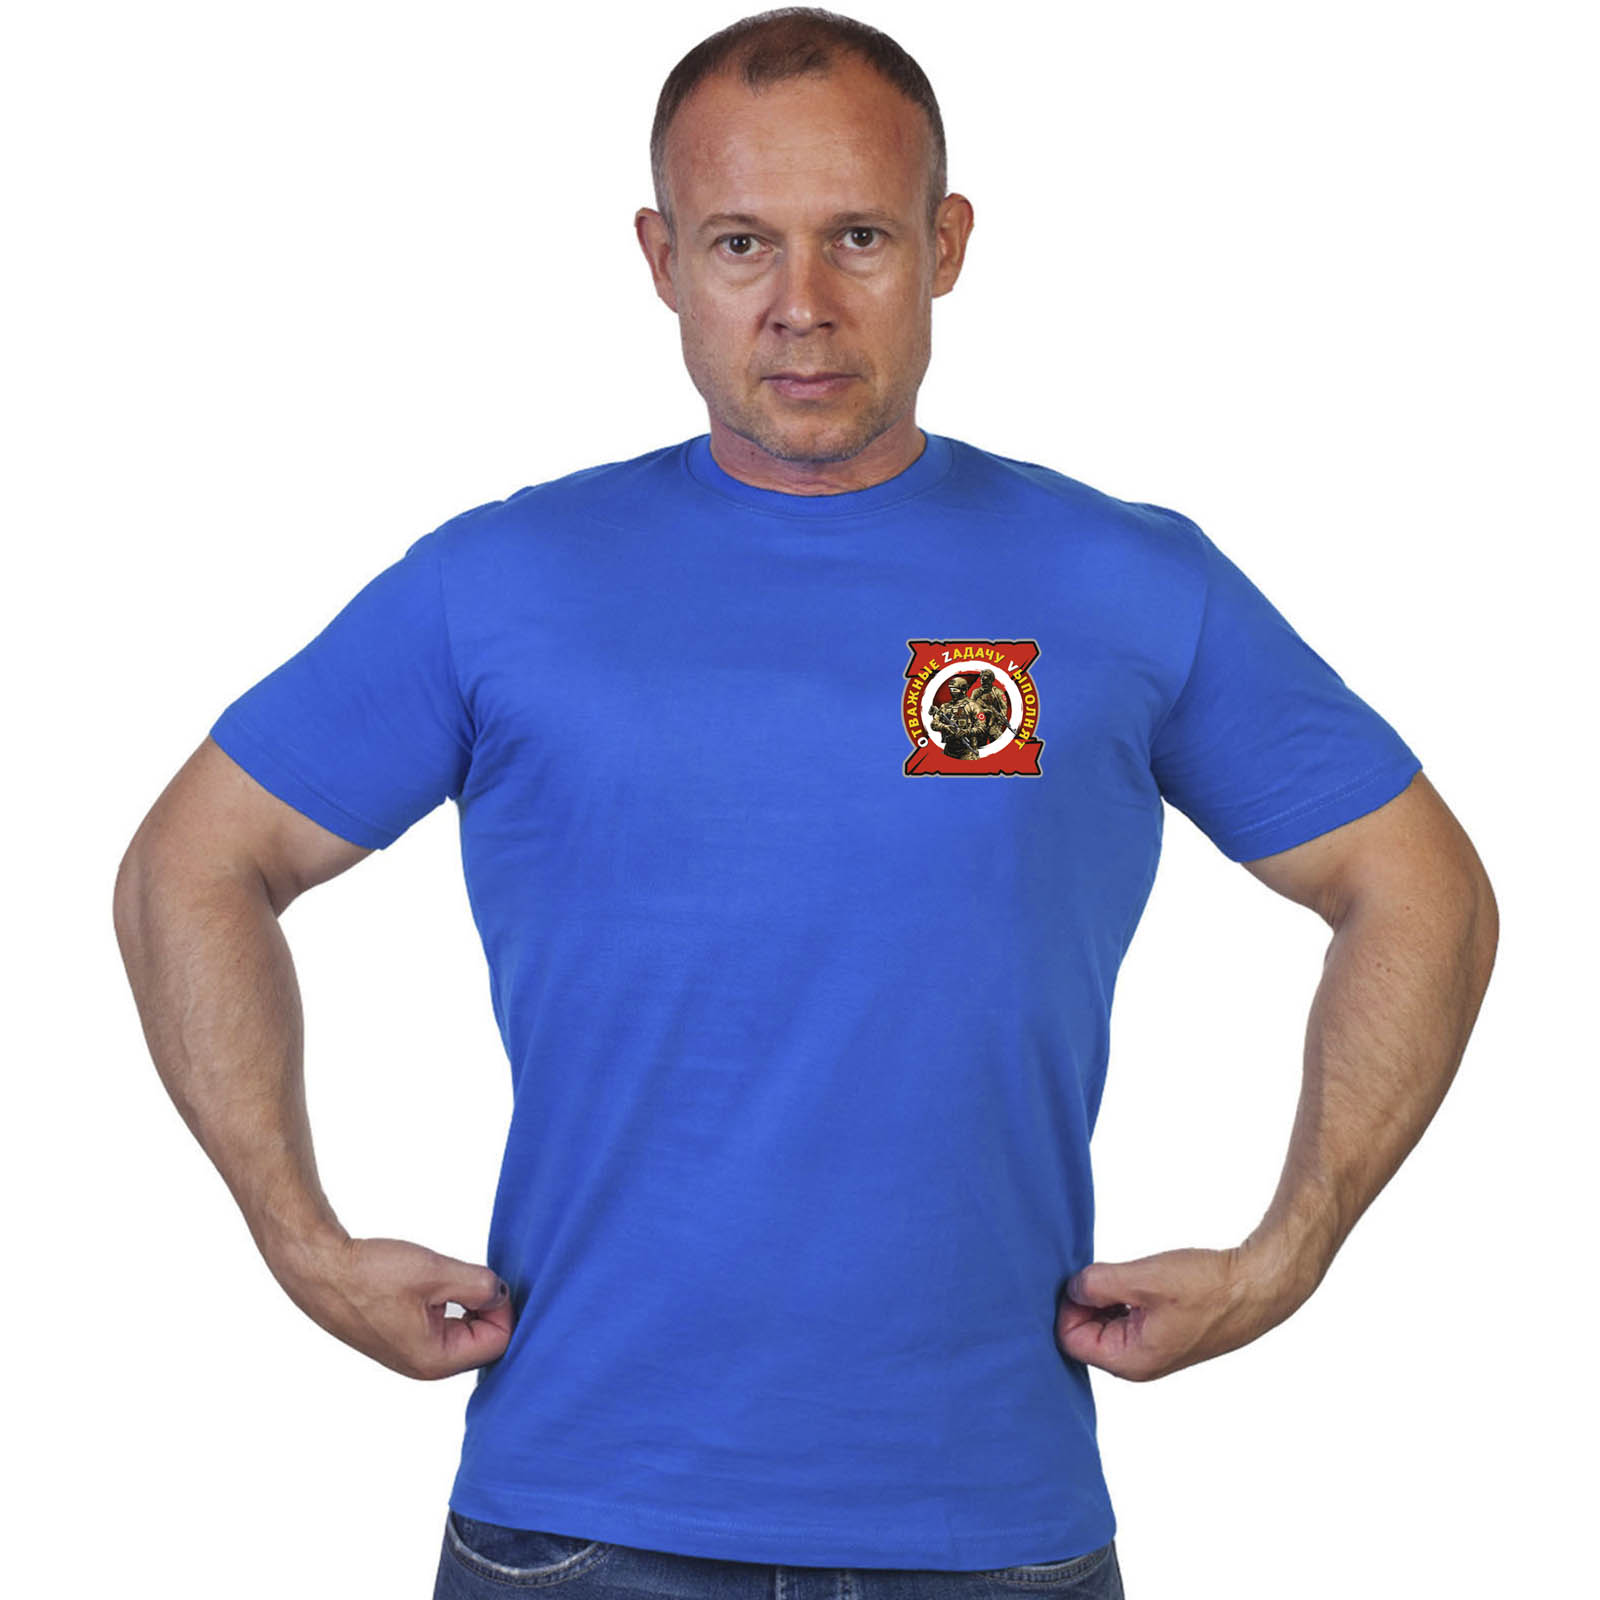 Васильковая футболка с термопринтом "Отважные Zадачу Vыполнят"